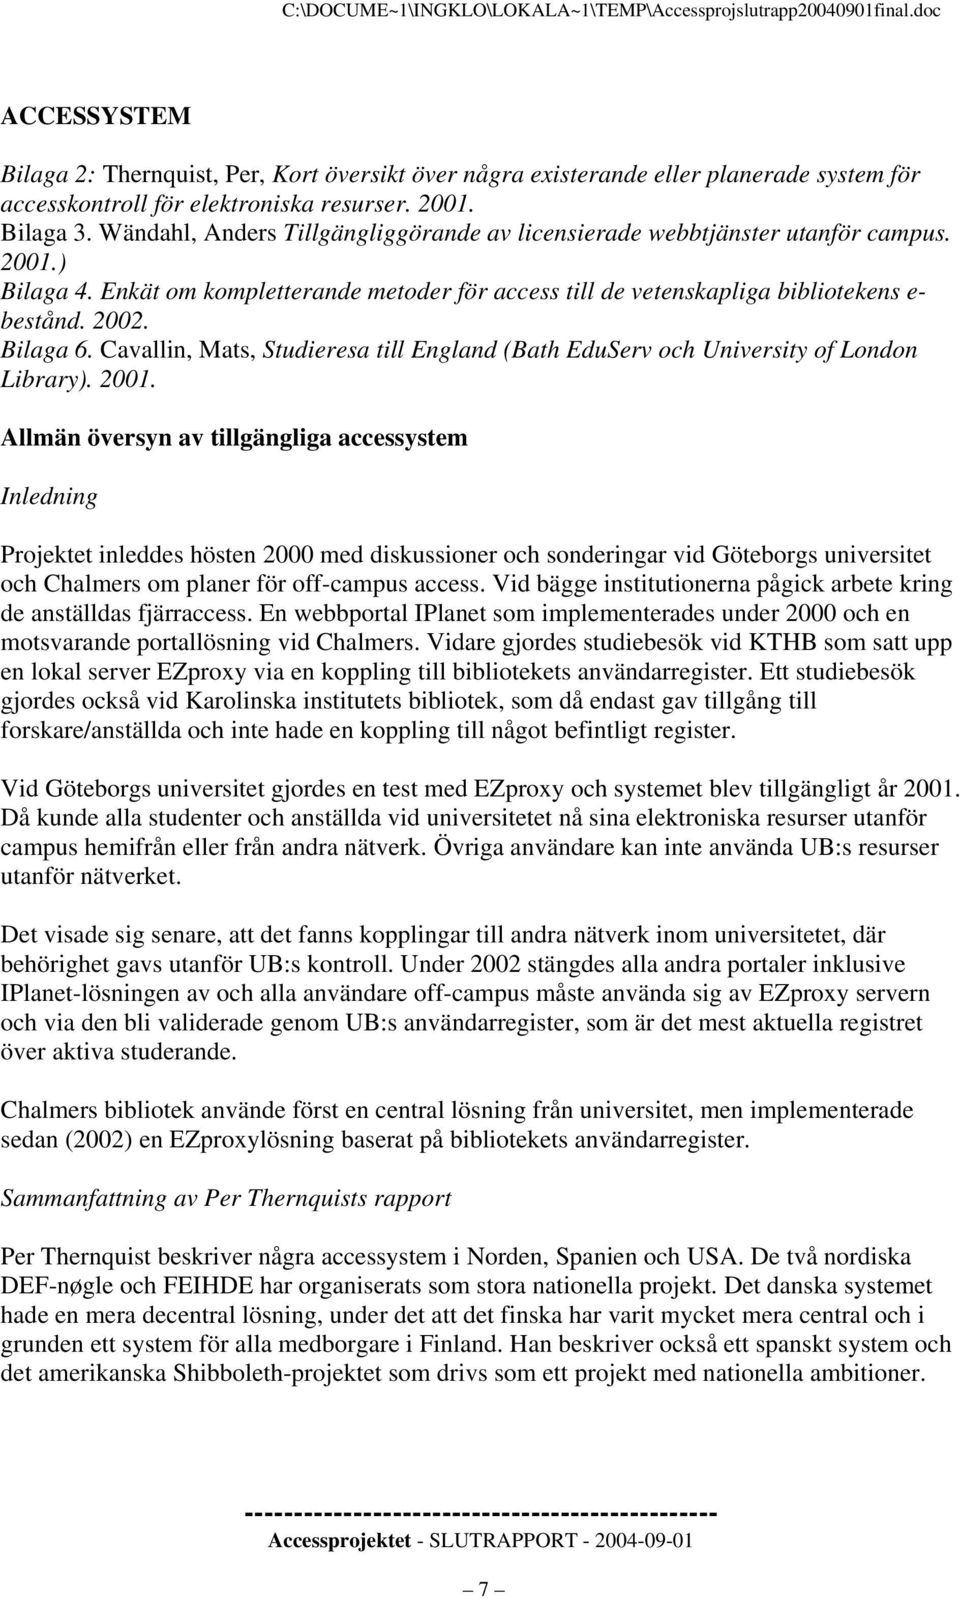 Bilaga 6. Cavallin, Mats, Studieresa till England (Bath EduServ och University of London Library). 2001.